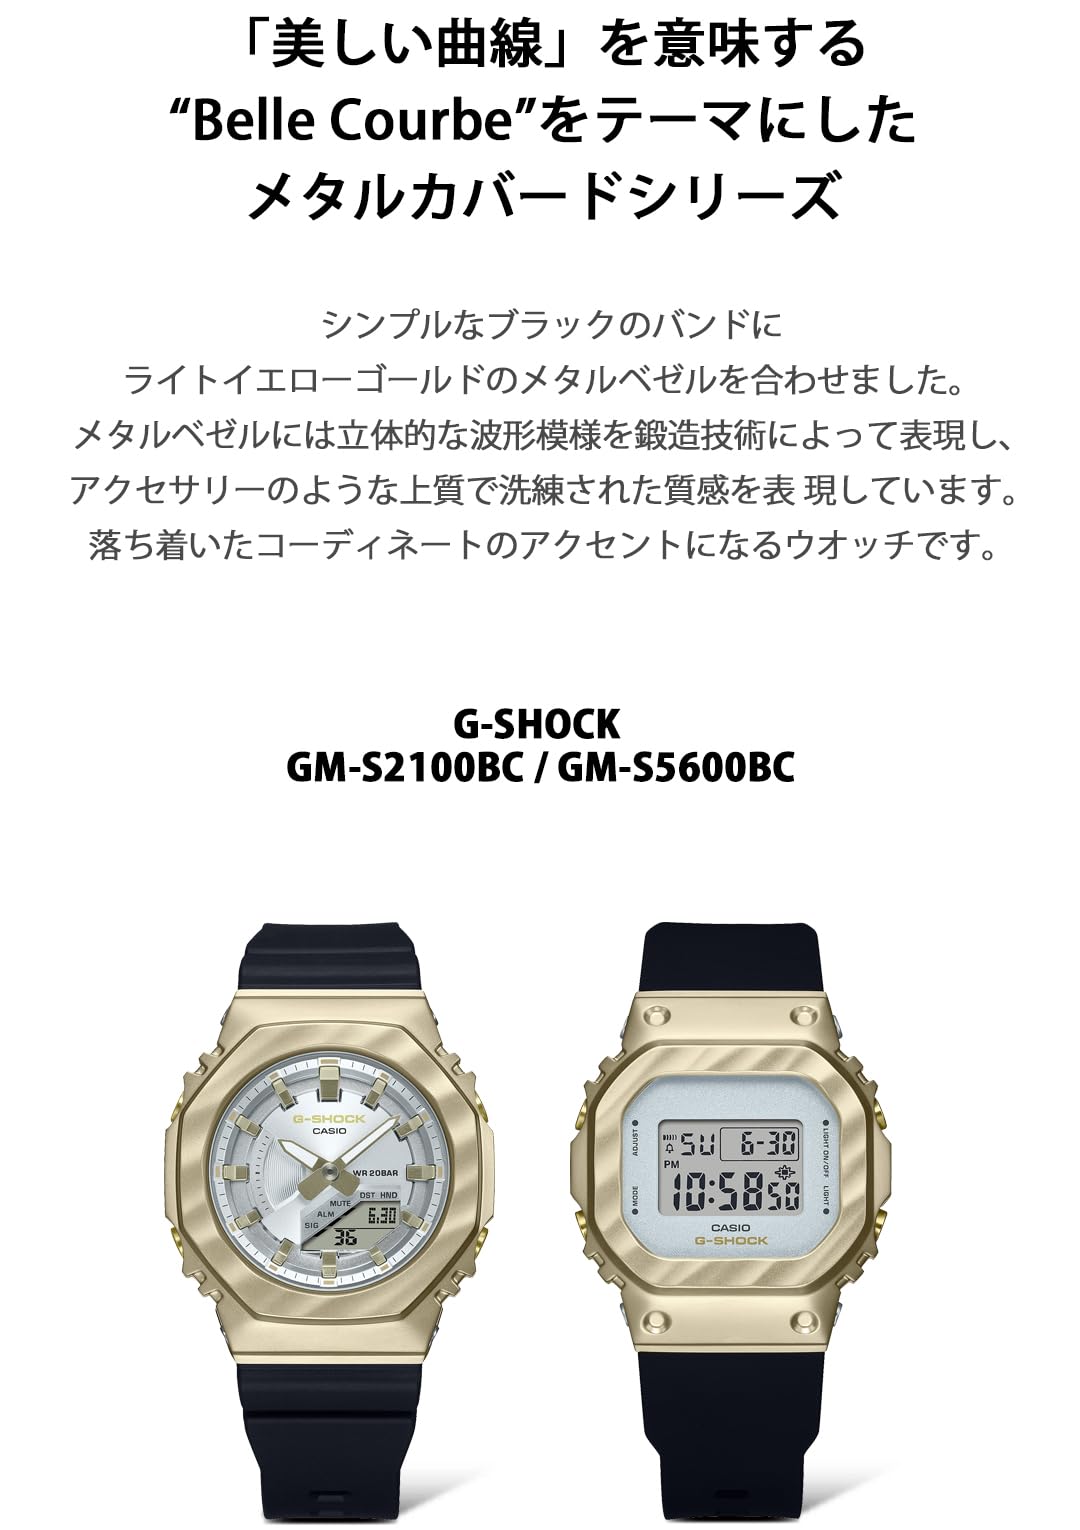 [カシオ] 腕時計 ジーショック【国内正規品】GM-S5600BC-1JFレディース ブラック - BanzaiHobby